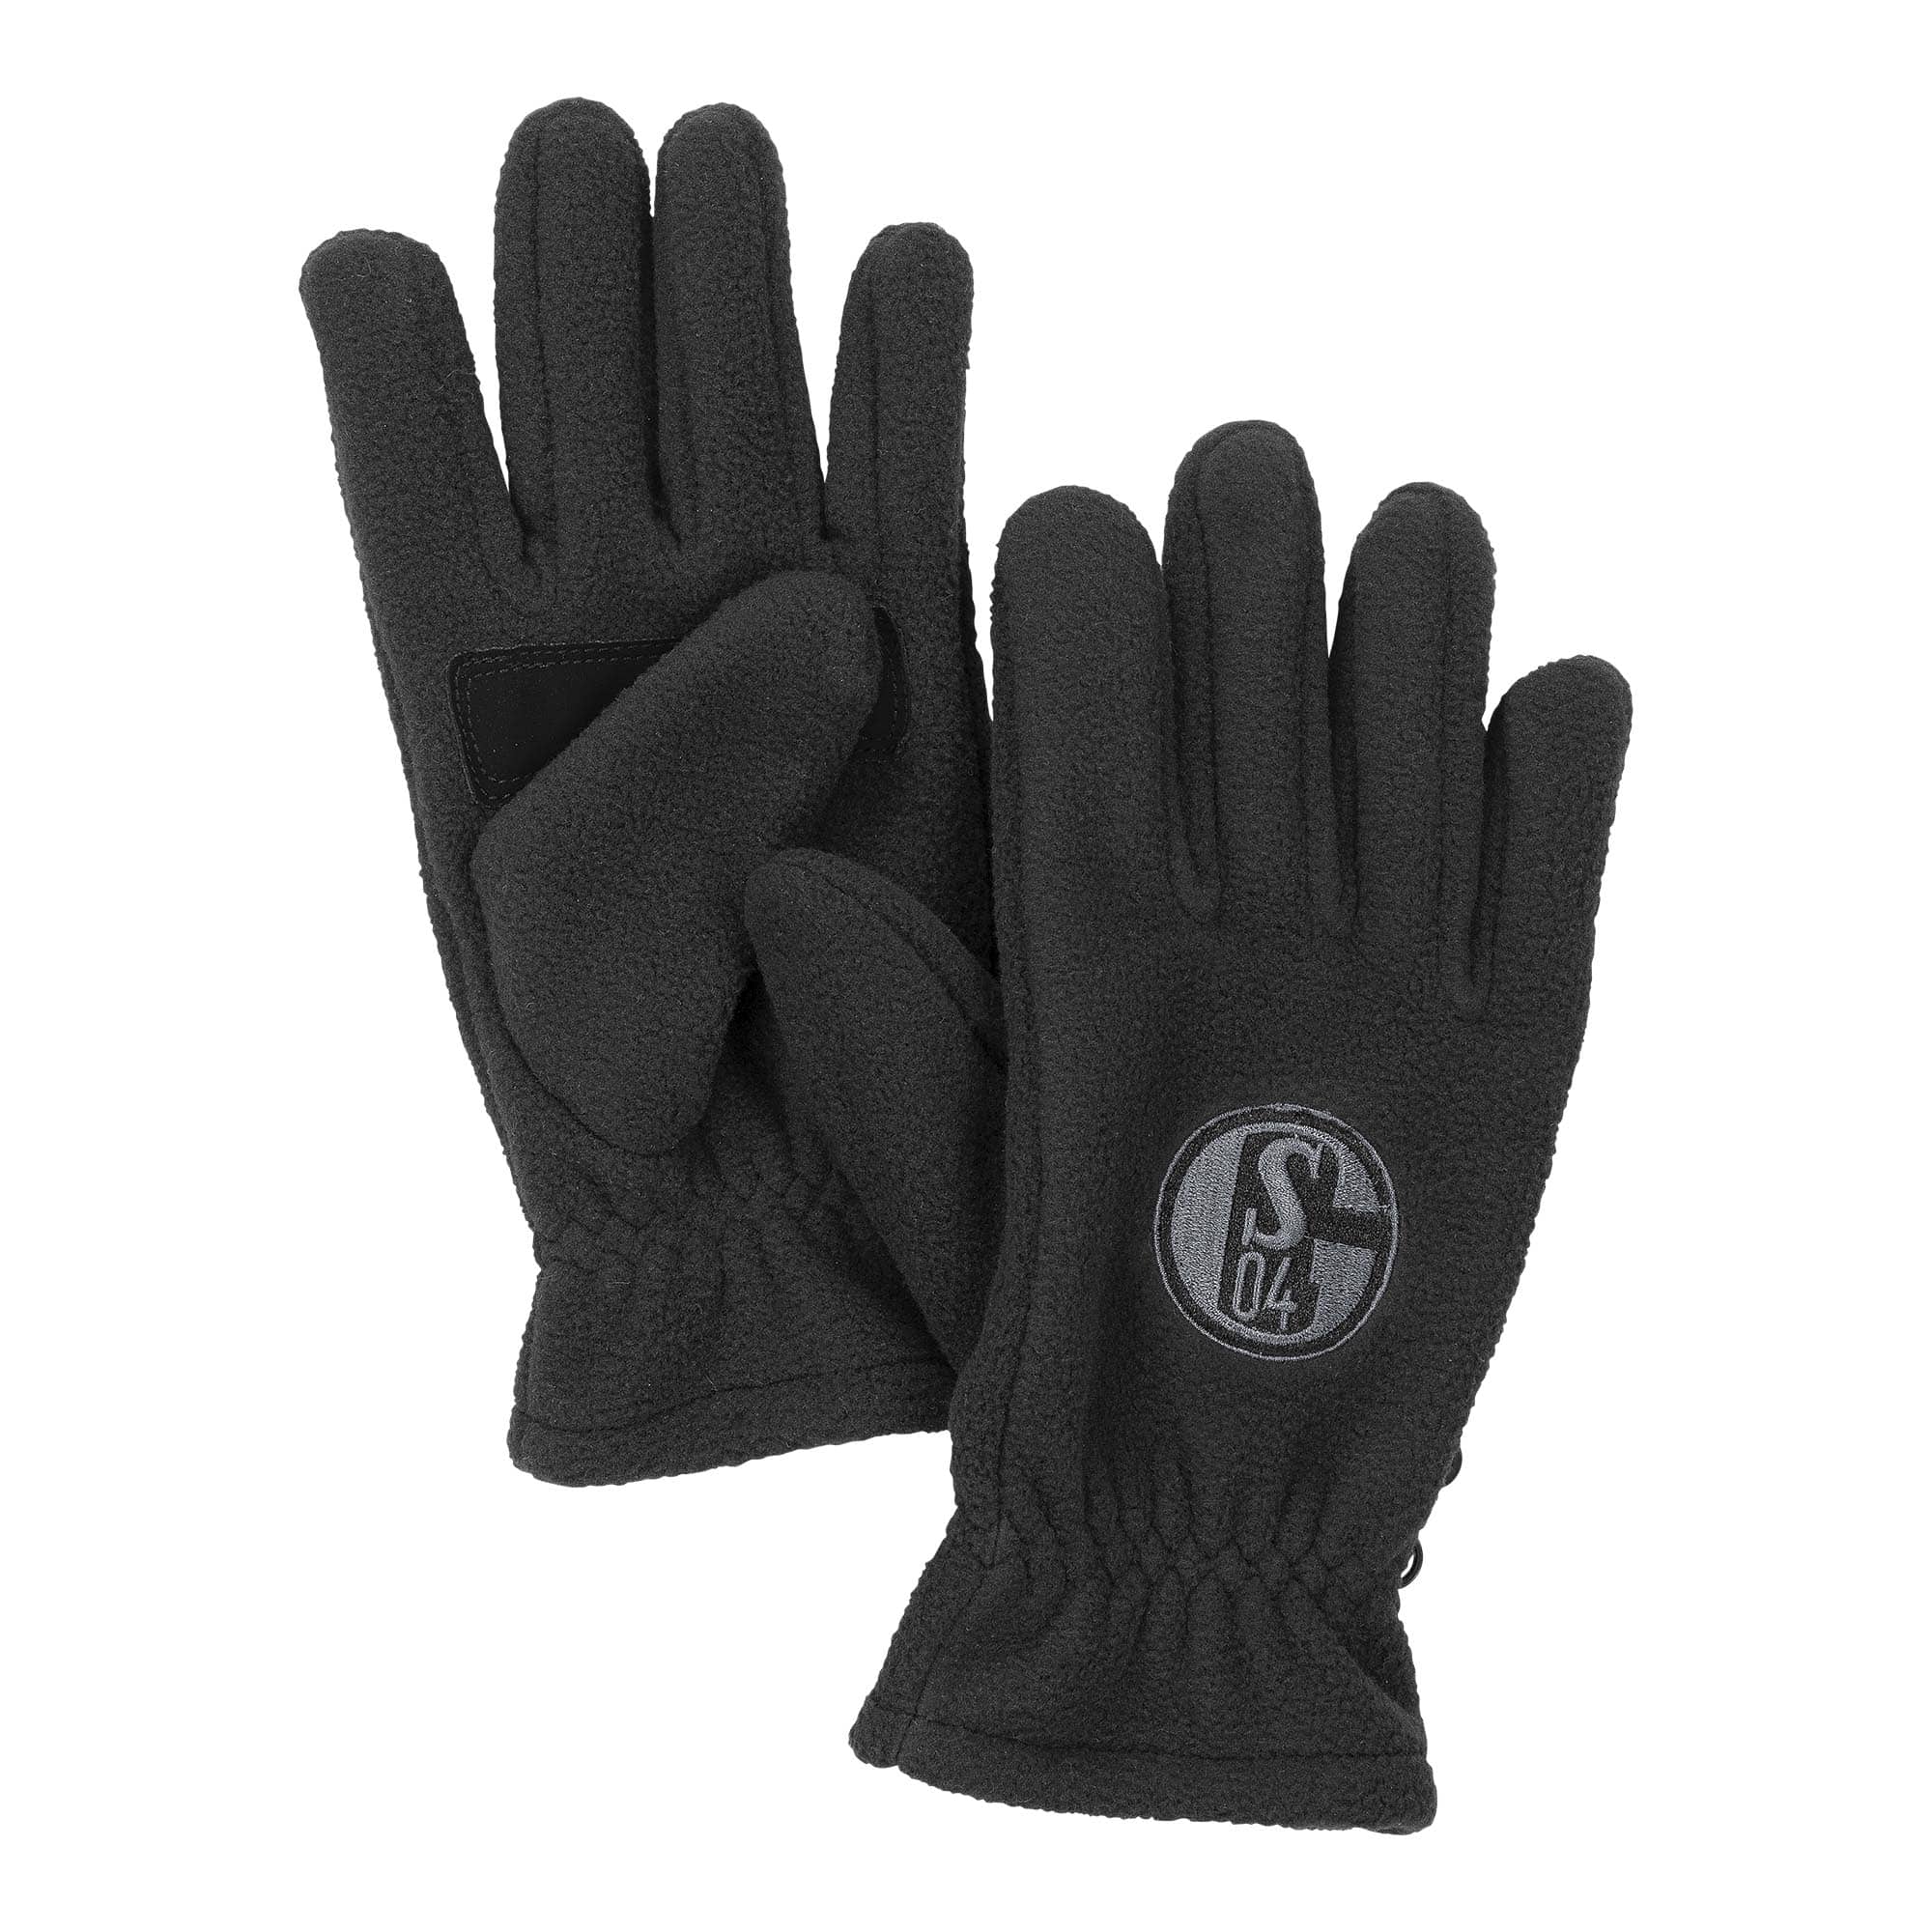 Handschuhe Fleece schwarz